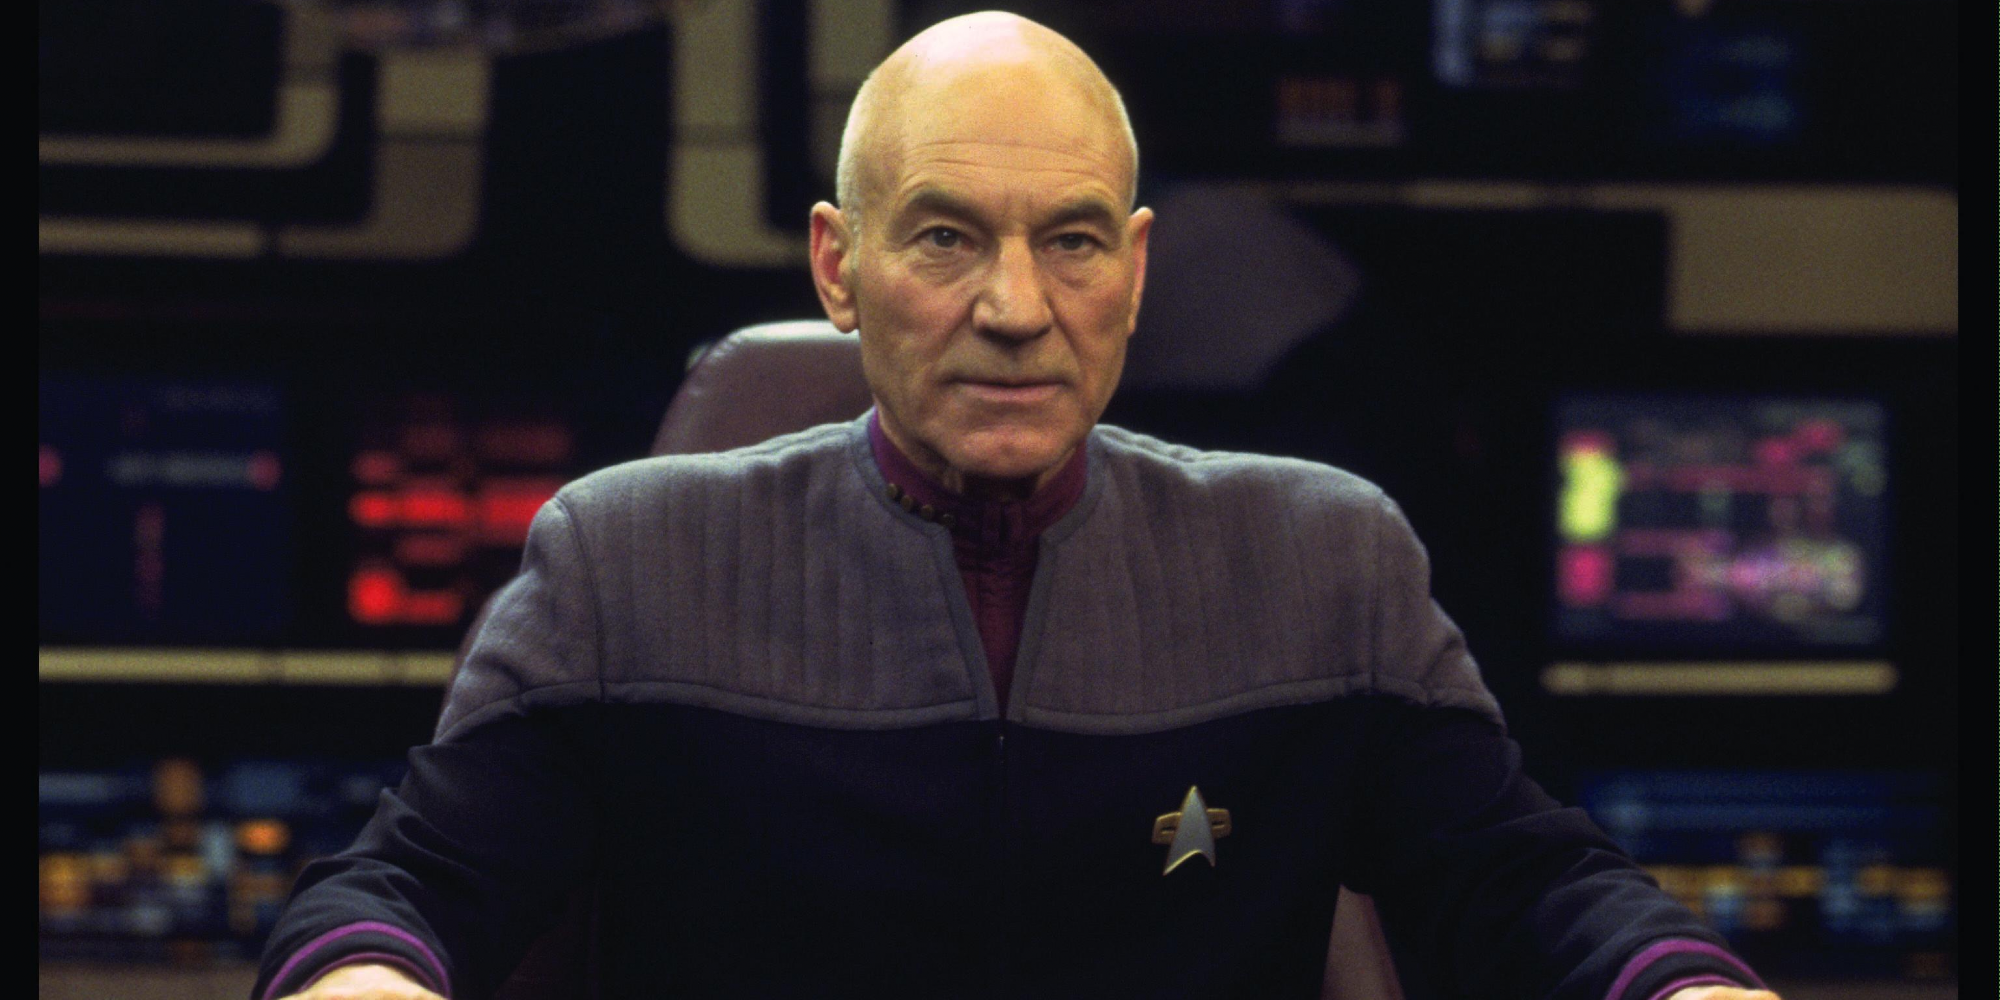 Sir Patrick Stewart in Star Trek: Picard